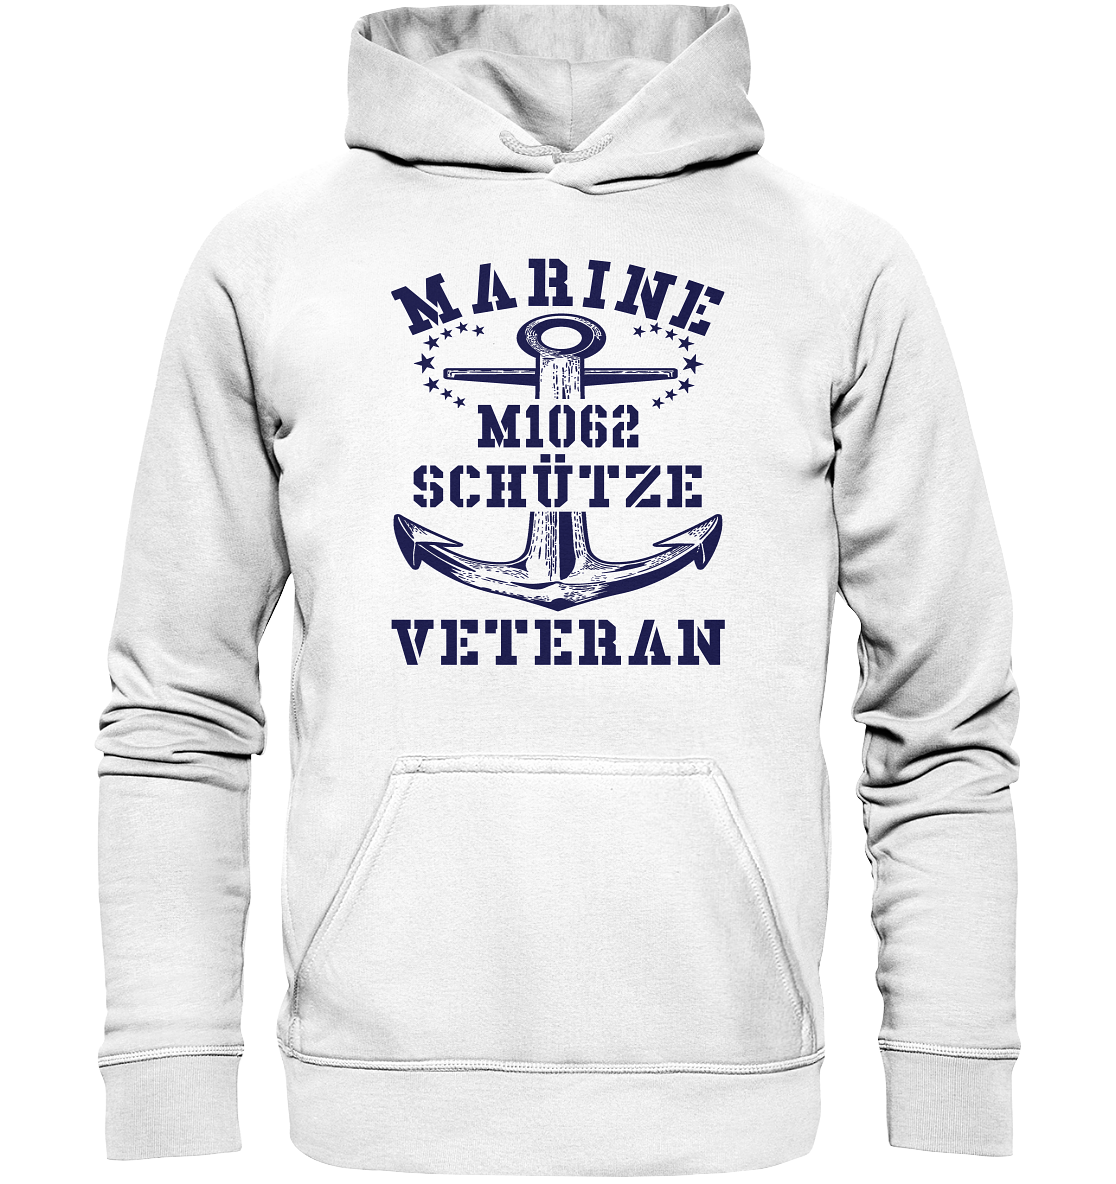 SM-Boot M1062 SCHÜTZE Marine Veteran - Basic Unisex Hoodie